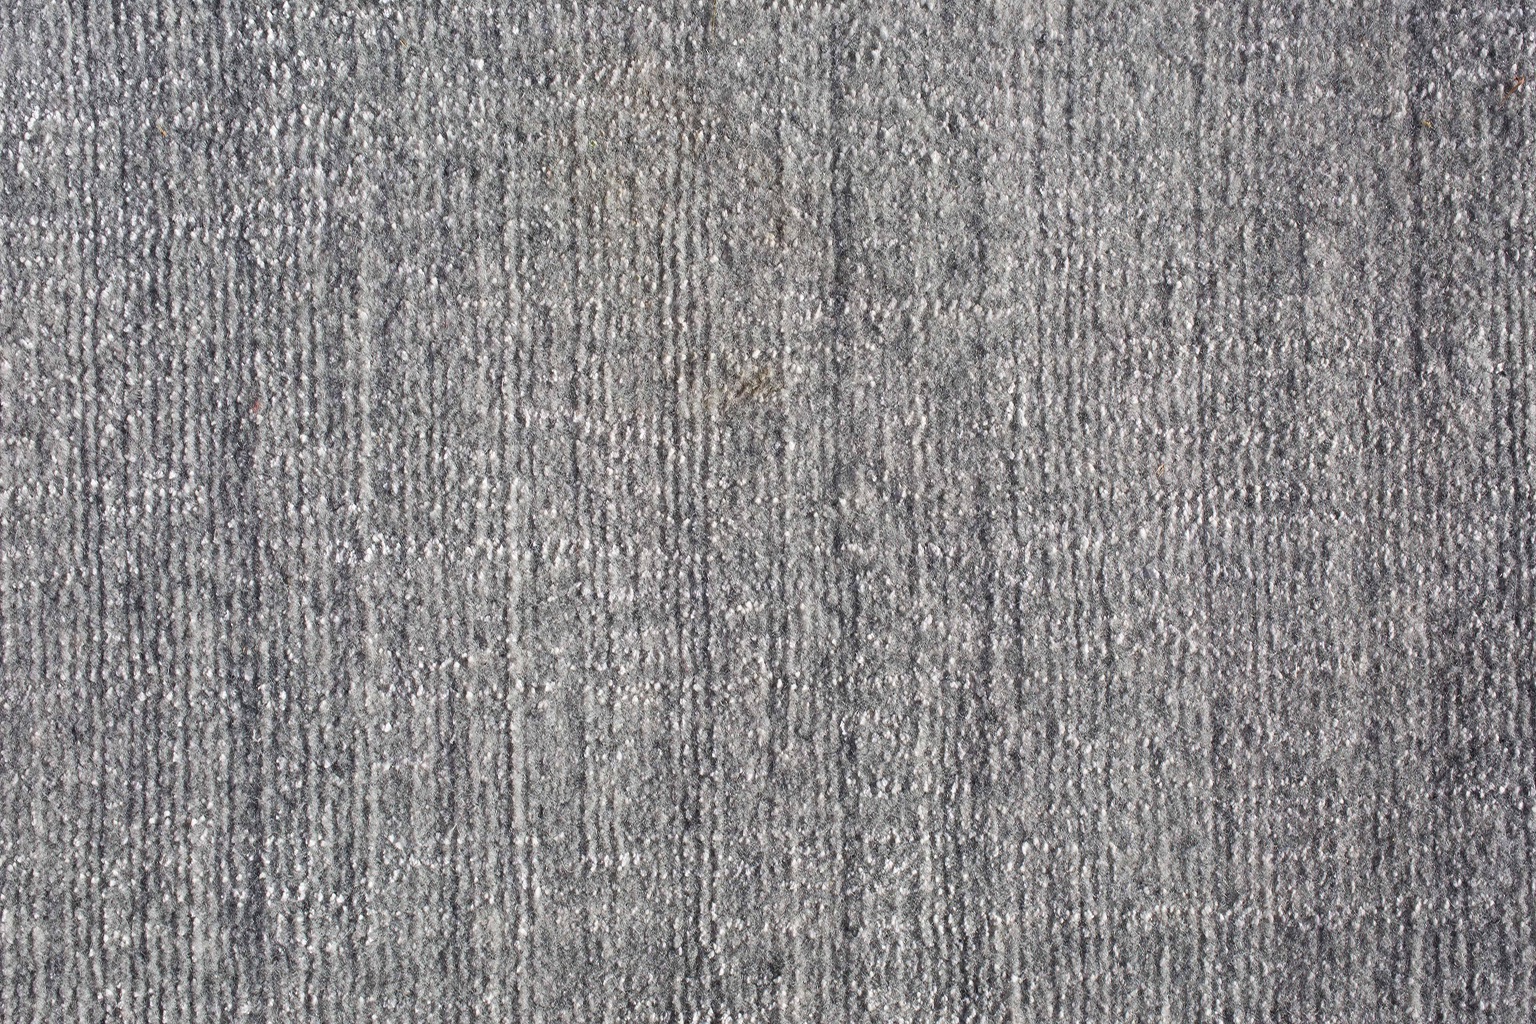 C&CMilano-Lattea-carpet